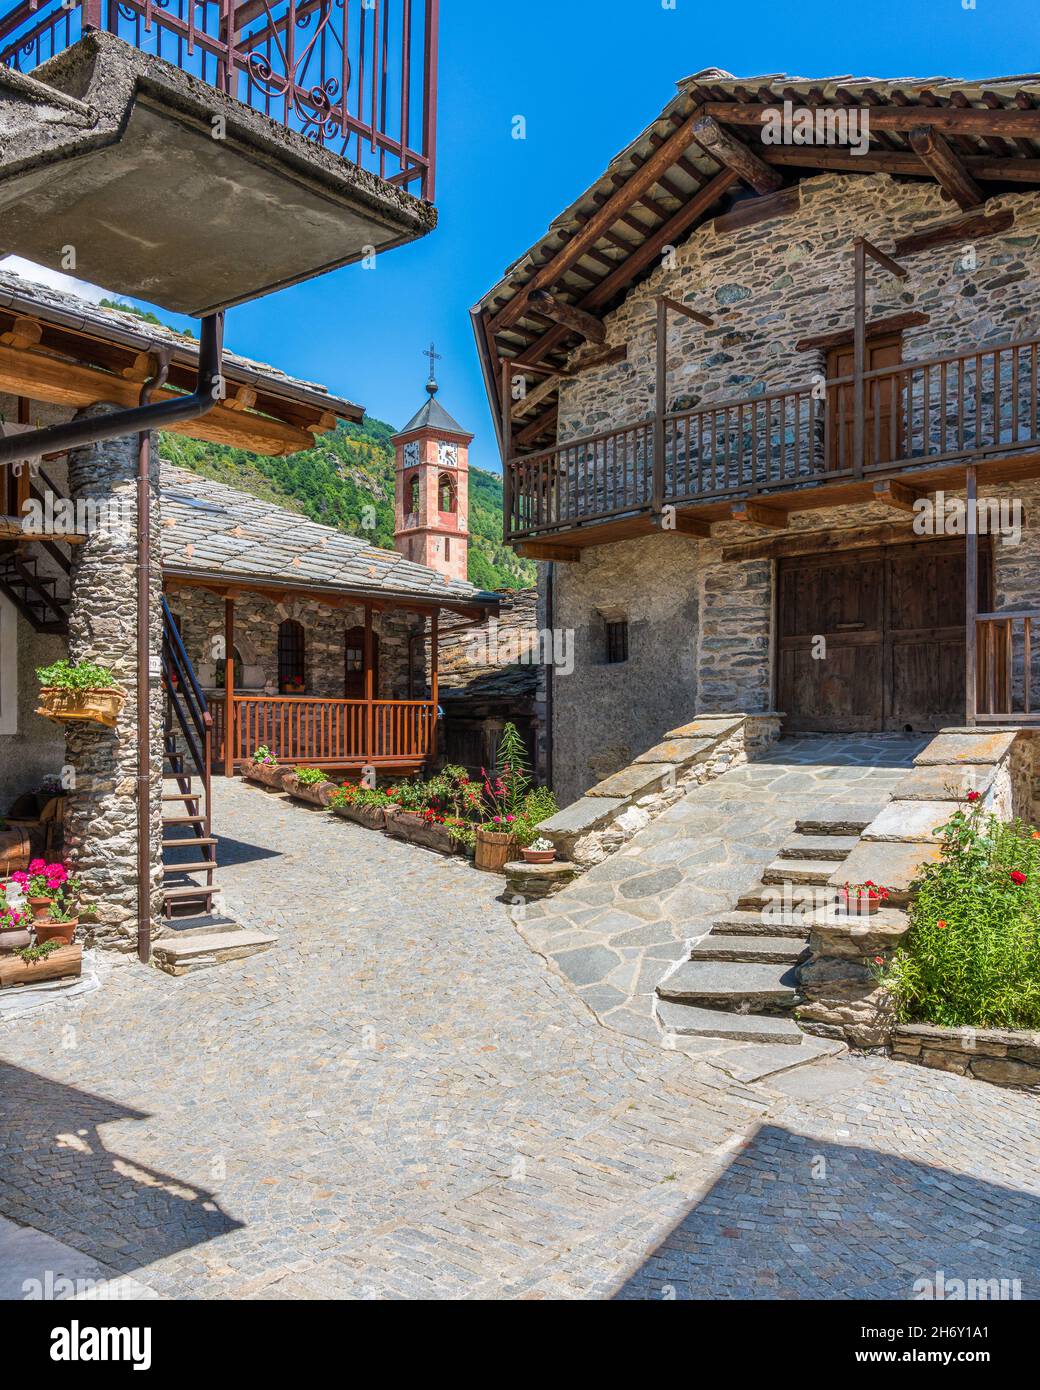 Il pittoresco villaggio di Torrette, nella valle di Varaita. Provincia di Cuneo, Piemonte, Italia settentrionale. Foto Stock